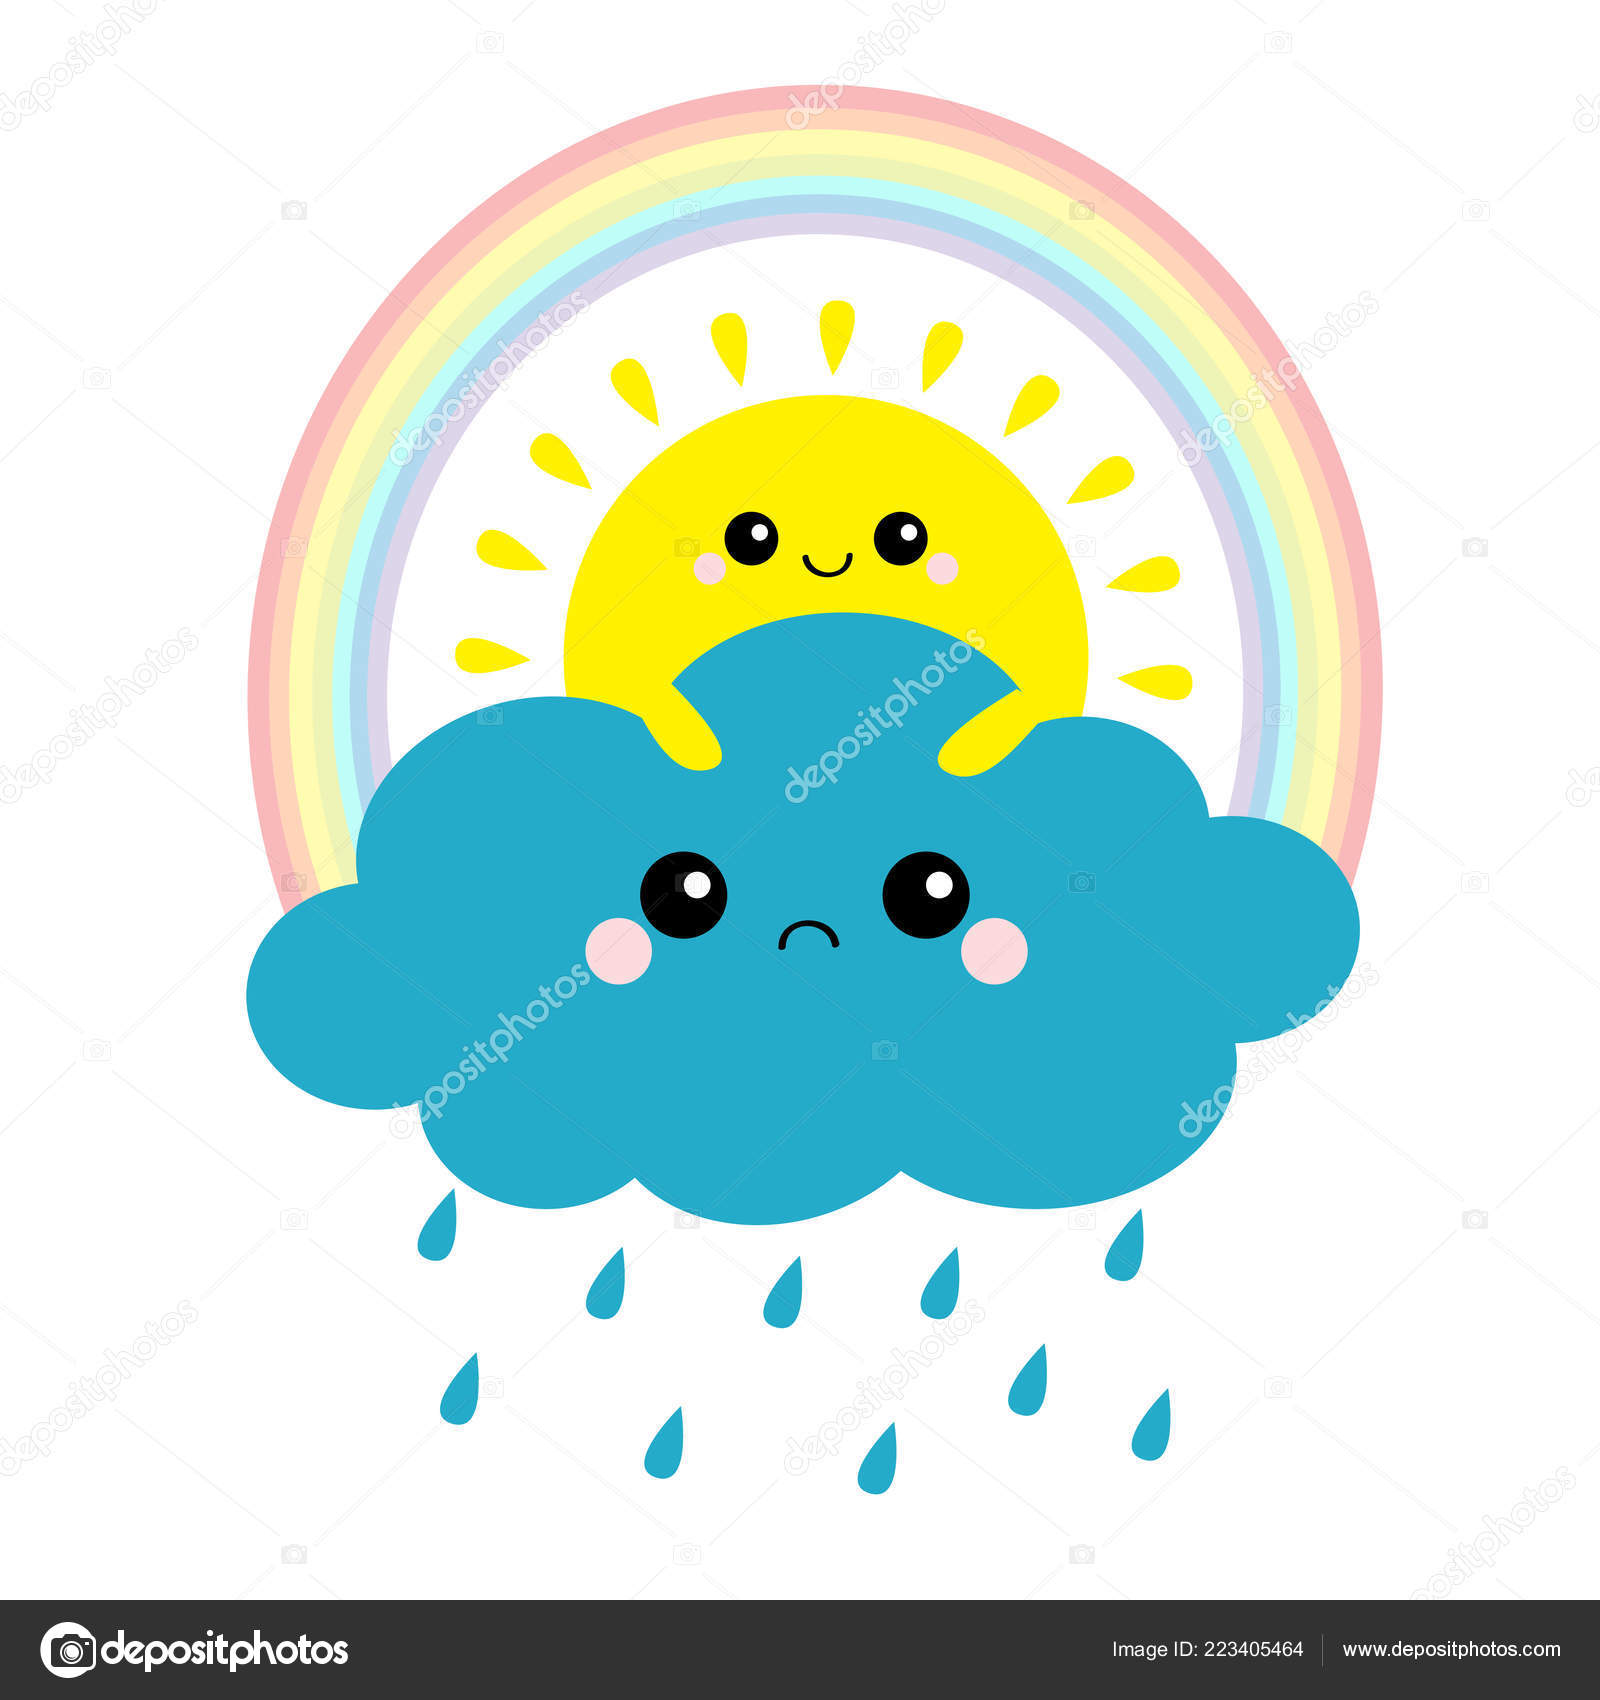 Kawaii guarda-chuva estrela nuvem sol cartoon ilustração vetorial